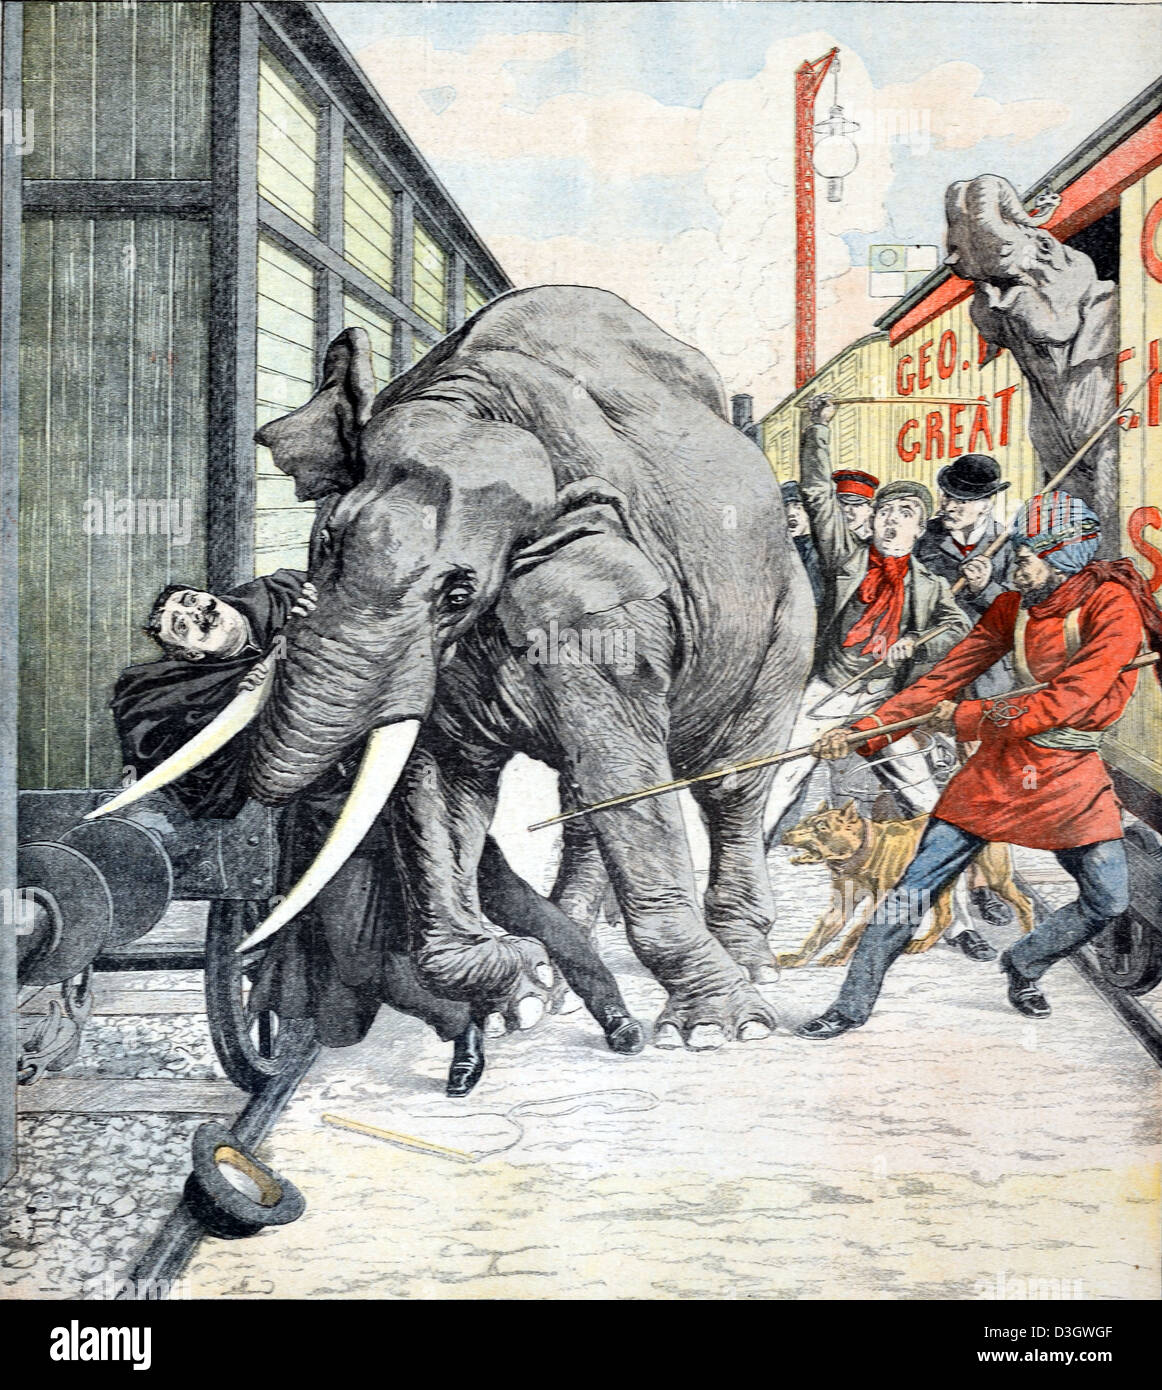 Mort de George William Lockhart, entraîneur d'éléphant (1849-1904) écrasé au Stampede par "Sauce" à Walthamstow Station Angleterre. Illustration vintage ou gravure 1904 Banque D'Images